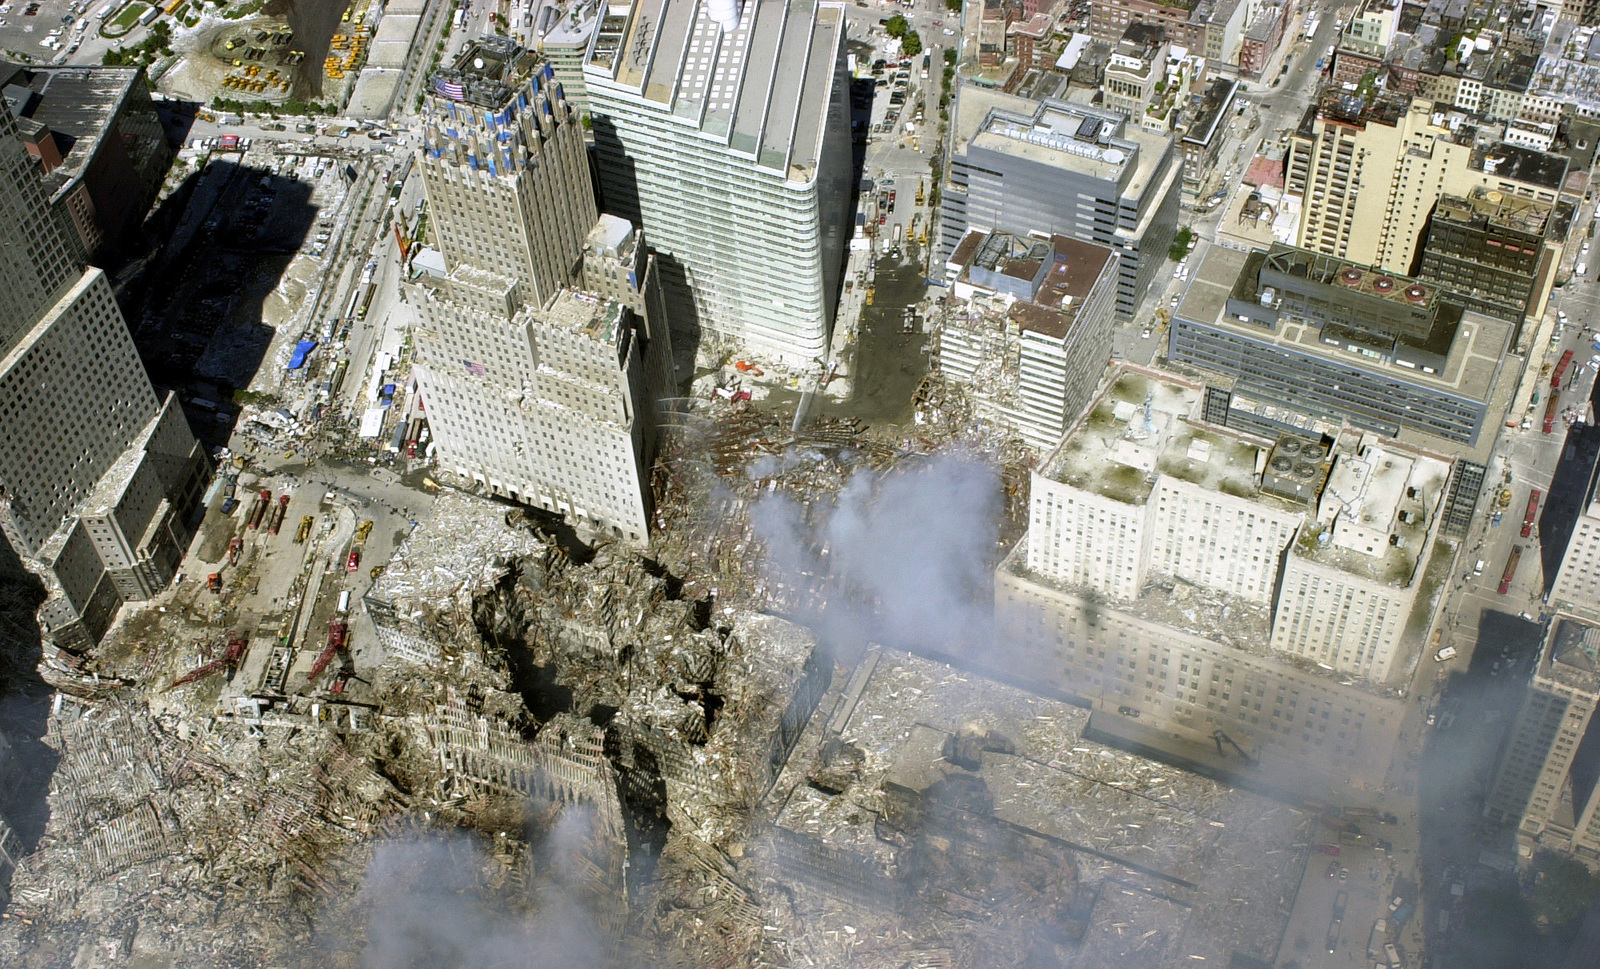 Мир после падения 117. Башни-Близнецы ВТЦ.. Торговый центр 9/11 башни Близнецы. ВТЦ 7 Нью-Йорк. ВТЦ Нью-Йорк башни Близнецы.